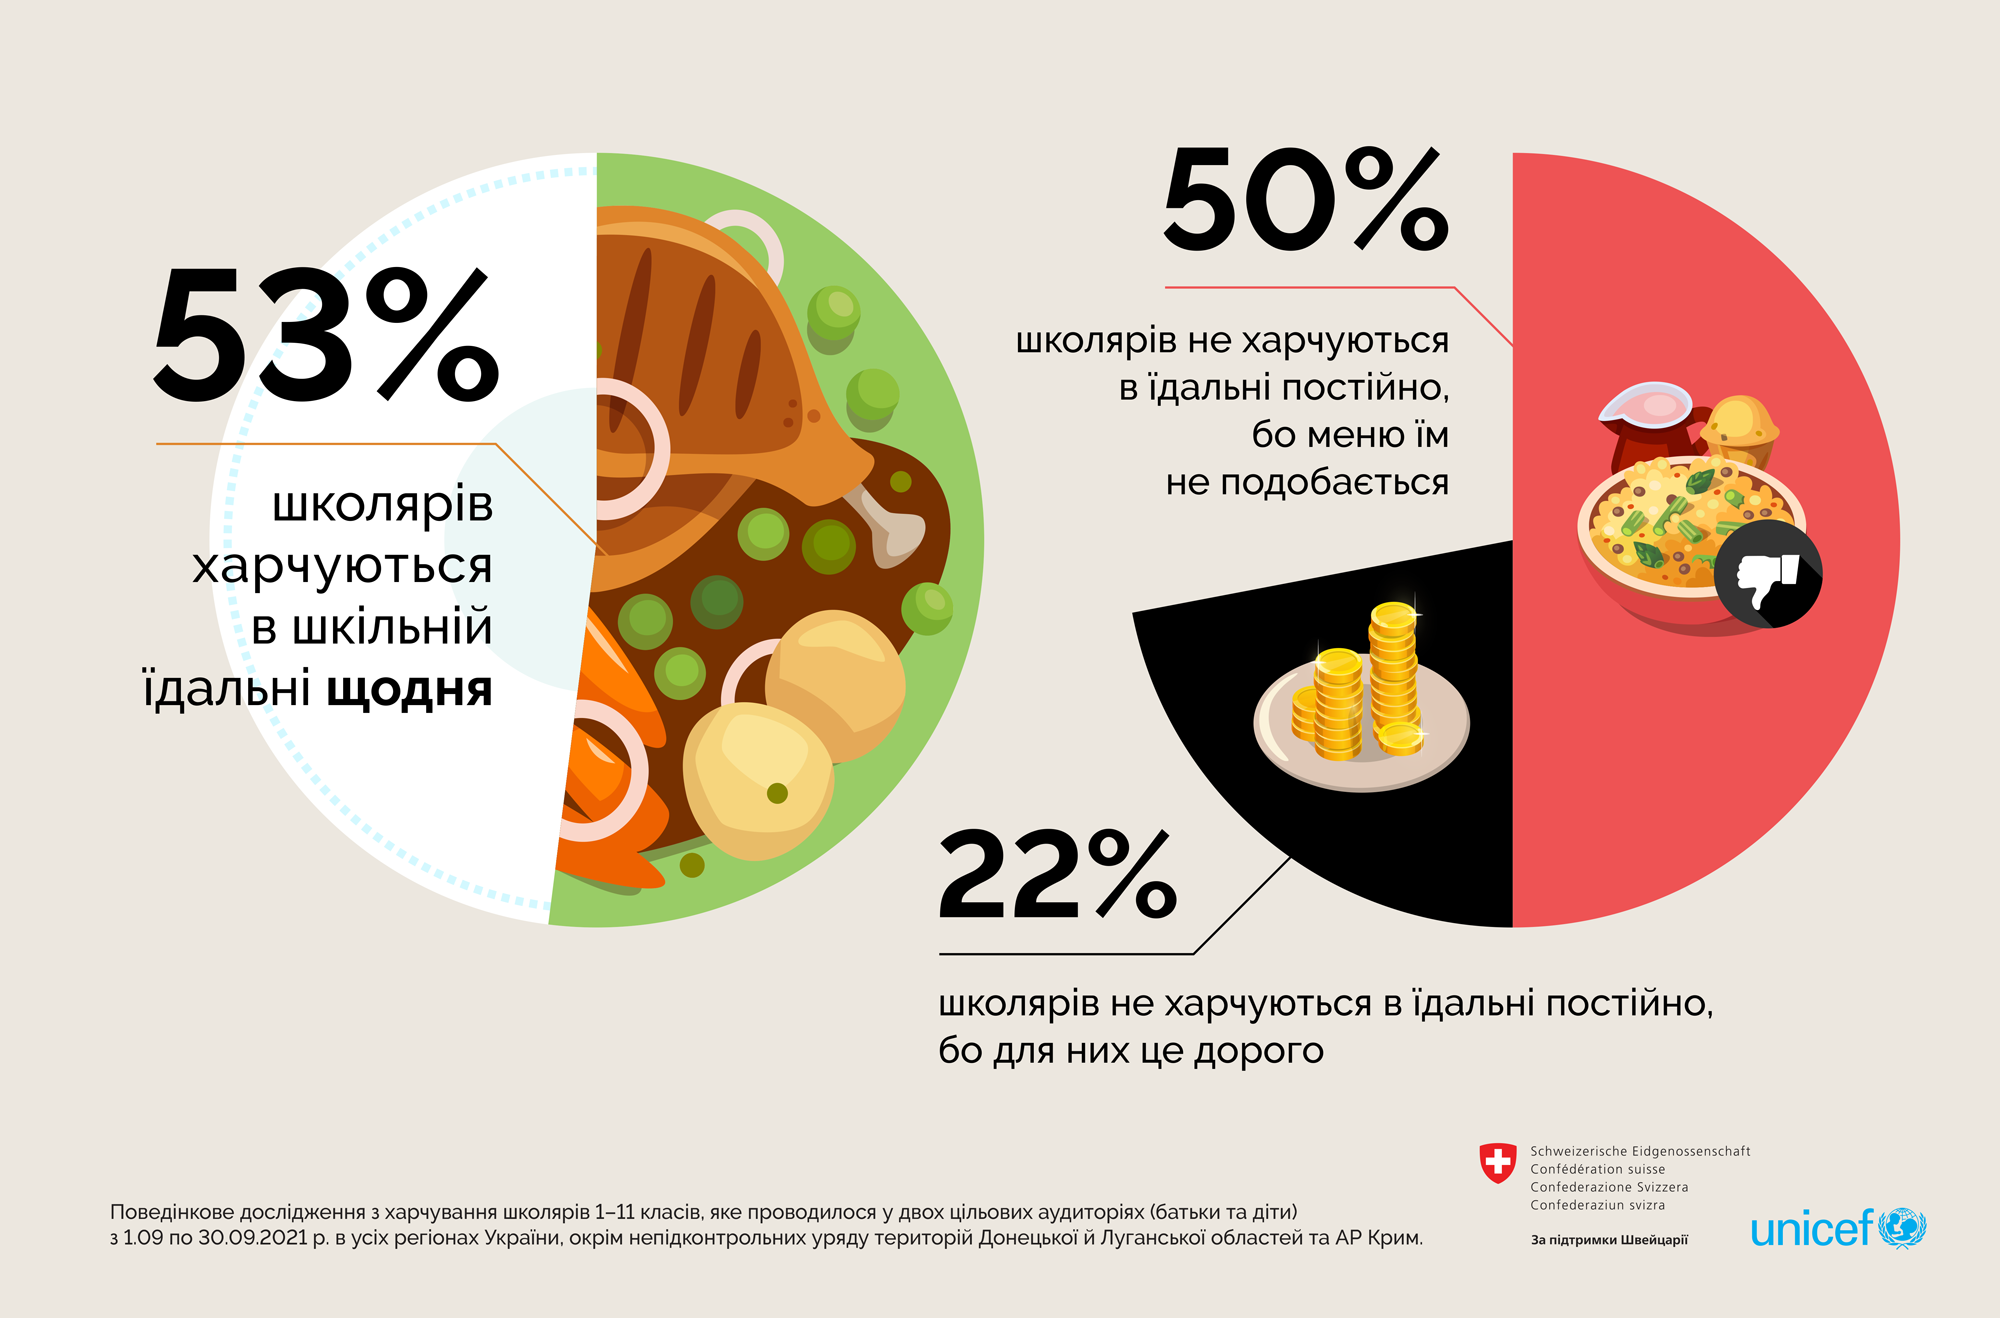 Для 22% дітей харчування в їдальні є дорогим